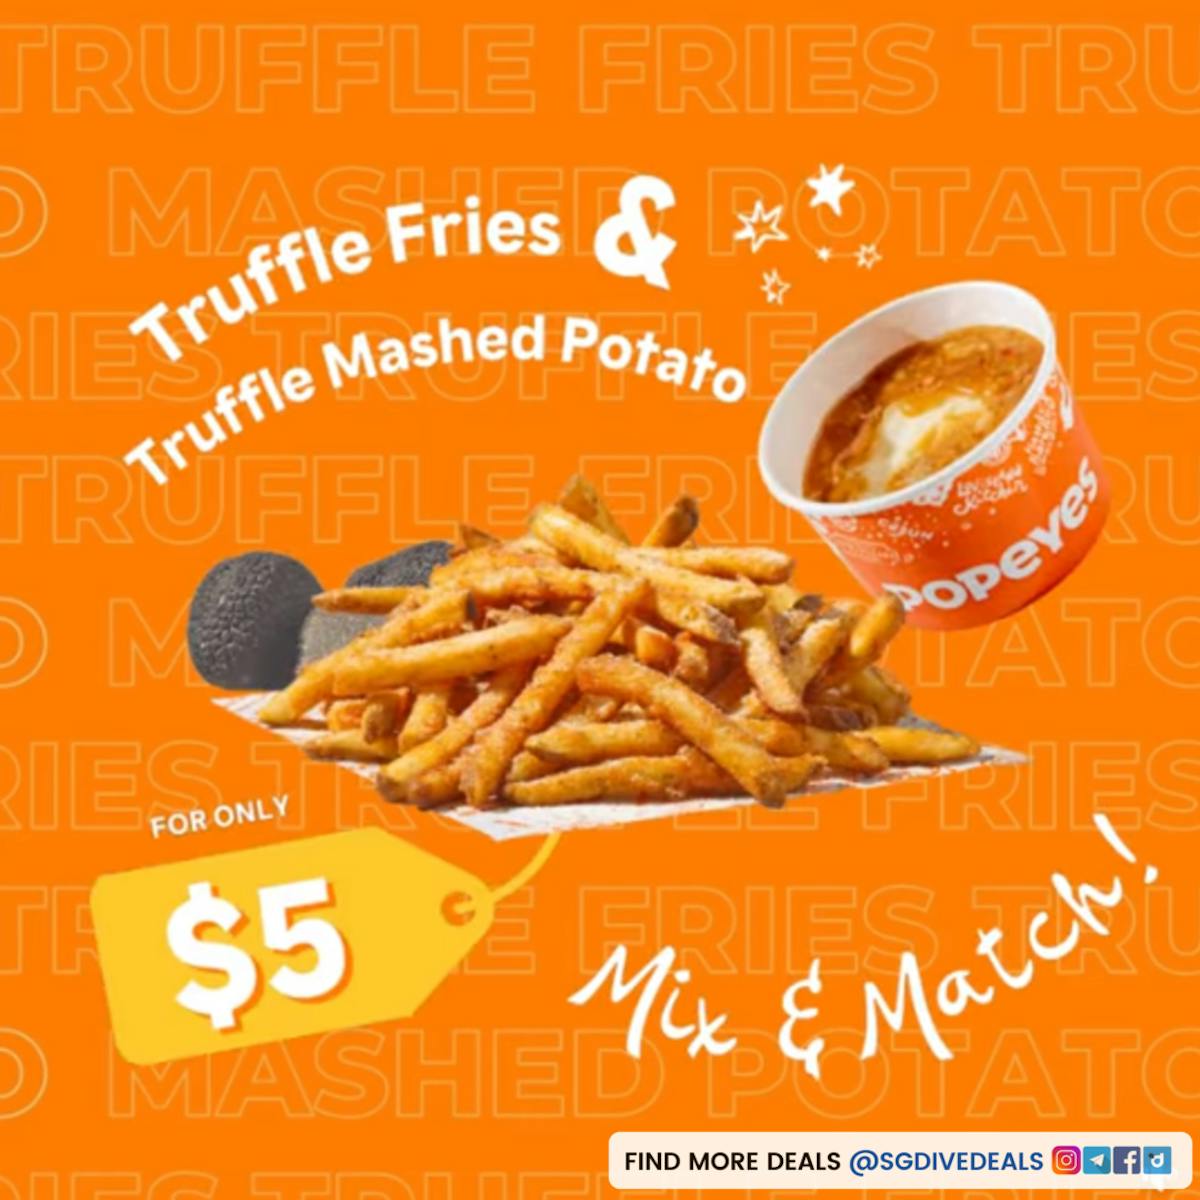 Popeyes: 2 Truffle Fries or 2 Truffle Mashed Potato for $5